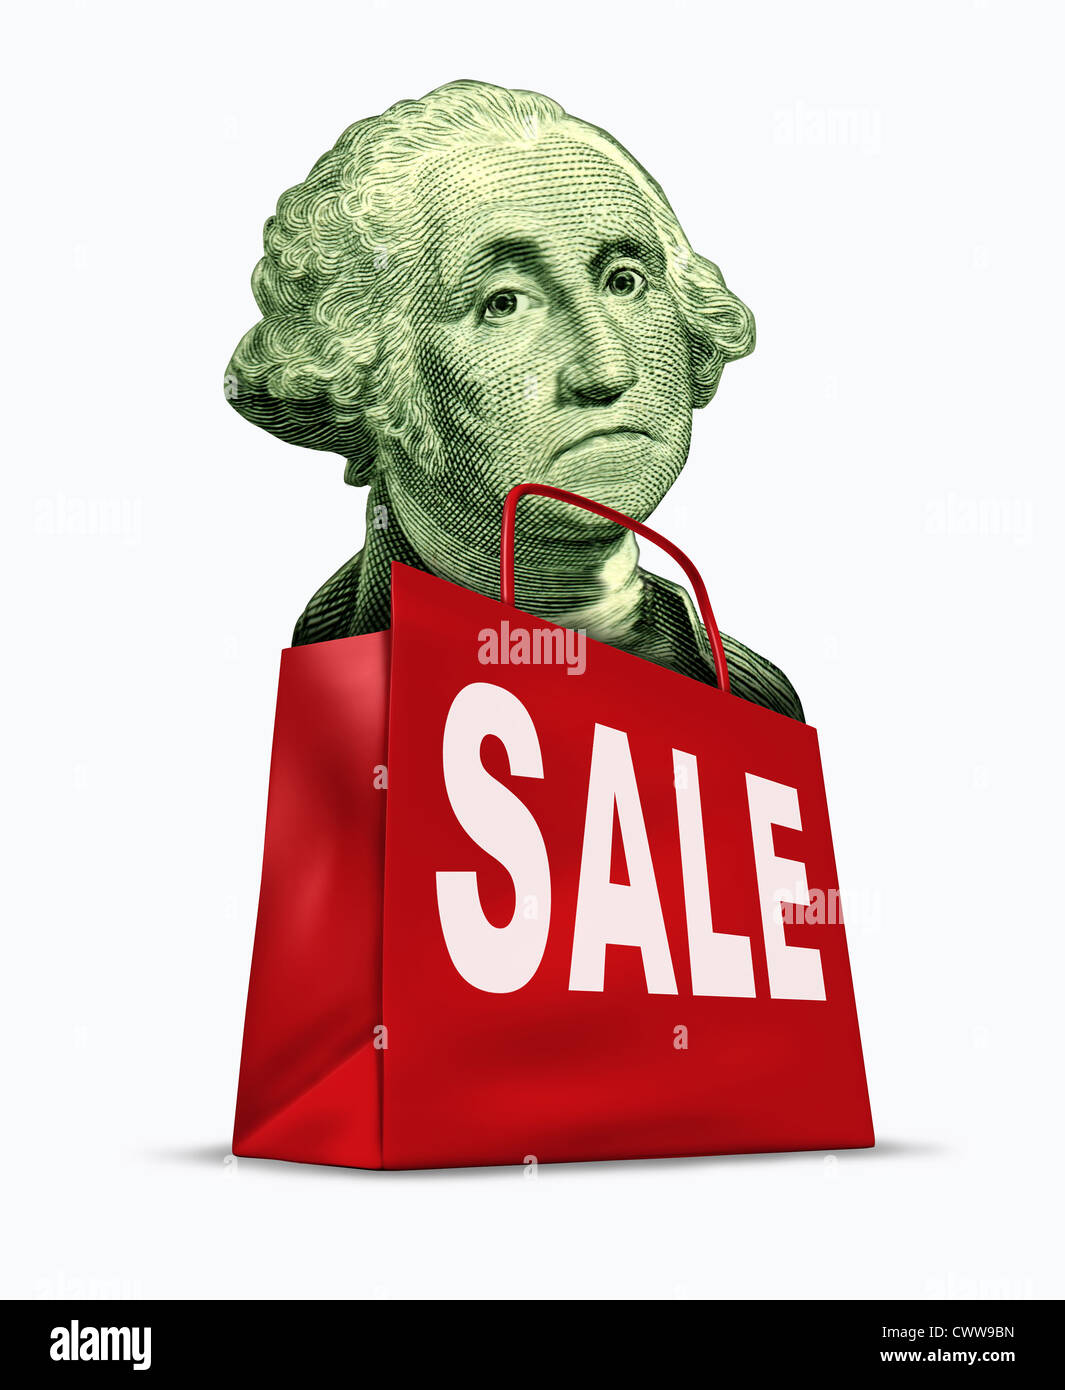 Währung auf Verkauf verursacht durch die Abwertung des Dollars in Bezug auf die weltweite Rezession und die US-Wirtschaft, vertreten durch einen Vintage-Charakter von George Washington in einer Einkaufstasche mit sehr günstigen Preisen. Stockfoto